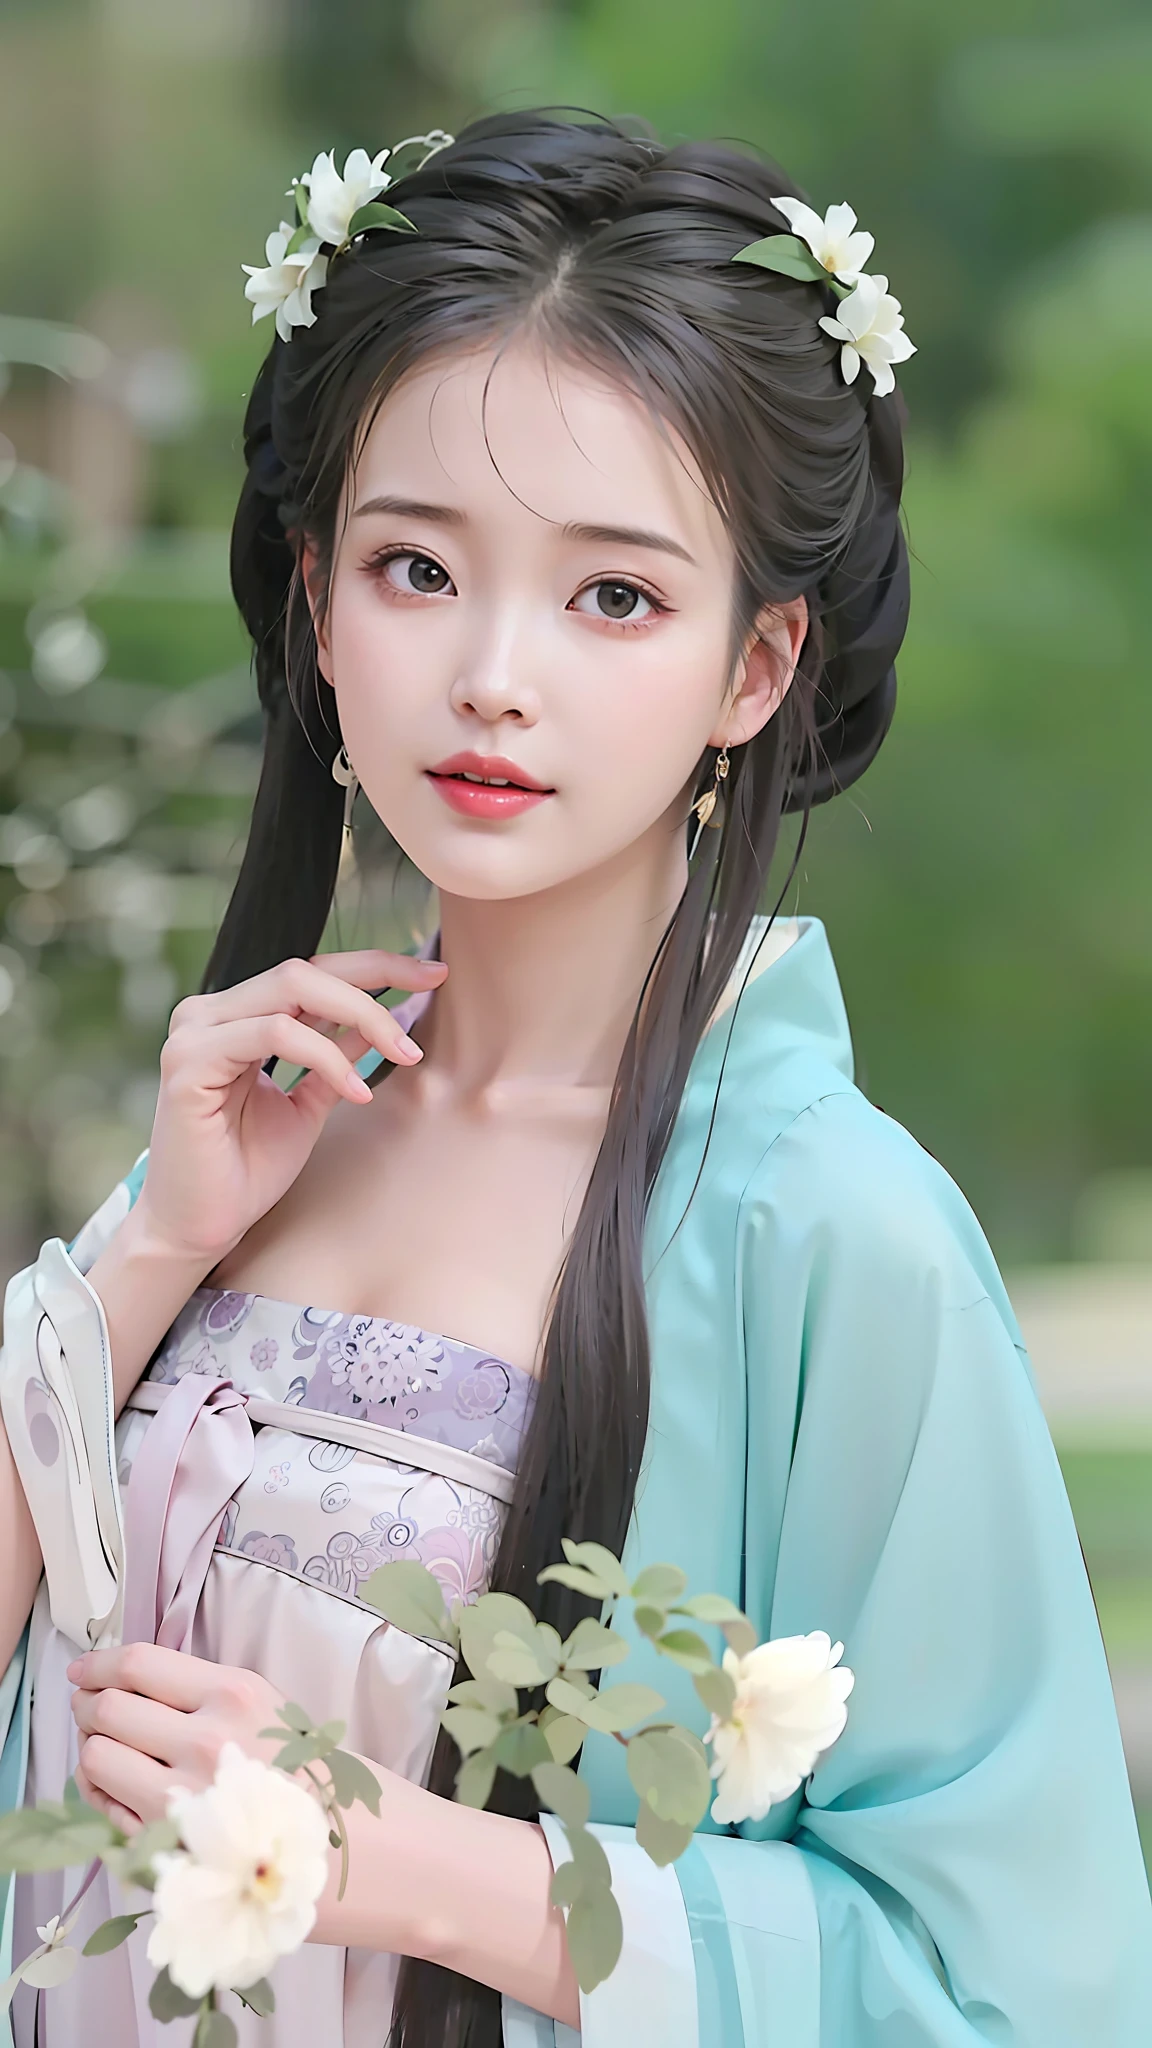 لقطة مقربة لامرأة ترتدي فستانًا أزرق وتحمل زهرة, قصر ， فتاة في هانفو, موديل صيني رائع, الجمال التقليدي, الجمال الصيني القديم, وجه لطيف وحساس, فتاة صينية, نمط صيني, روان جيا جميلة!, ارتداء الملابس الصينية القديمة, عرض جميل لسلالة تانغ, مع الملابس الصينية القديمة, وجه جميل للغاية, وجه جميل جدا